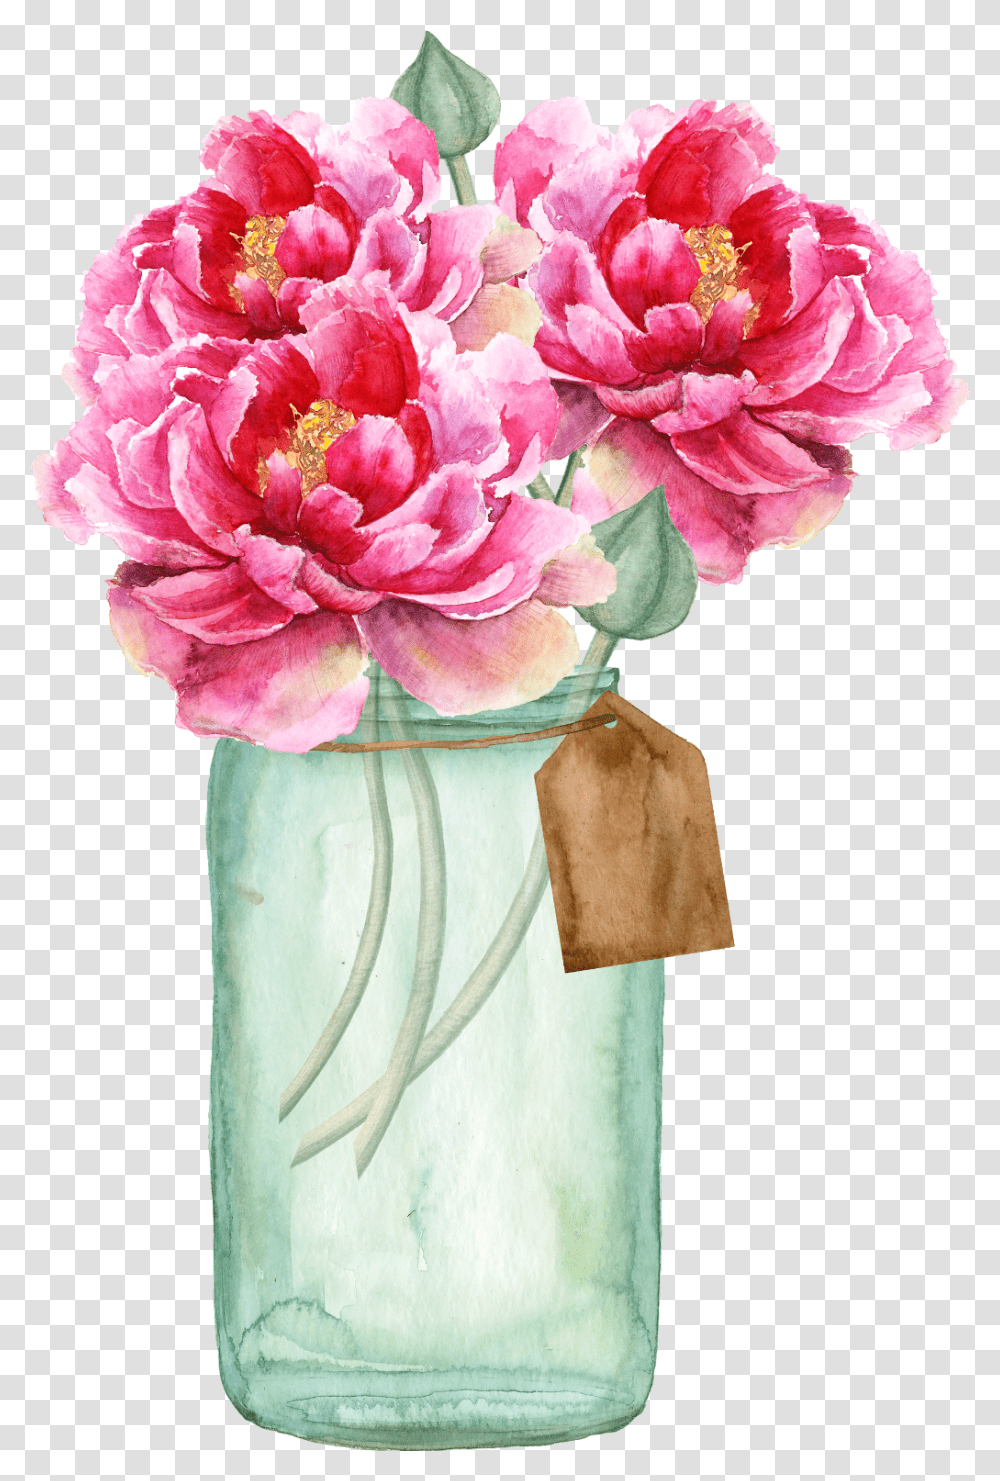 Floral Flowers Vase Vase Flower For Wedding Invitations, Plant, Blossom, Peony, Carnation Transparent Png